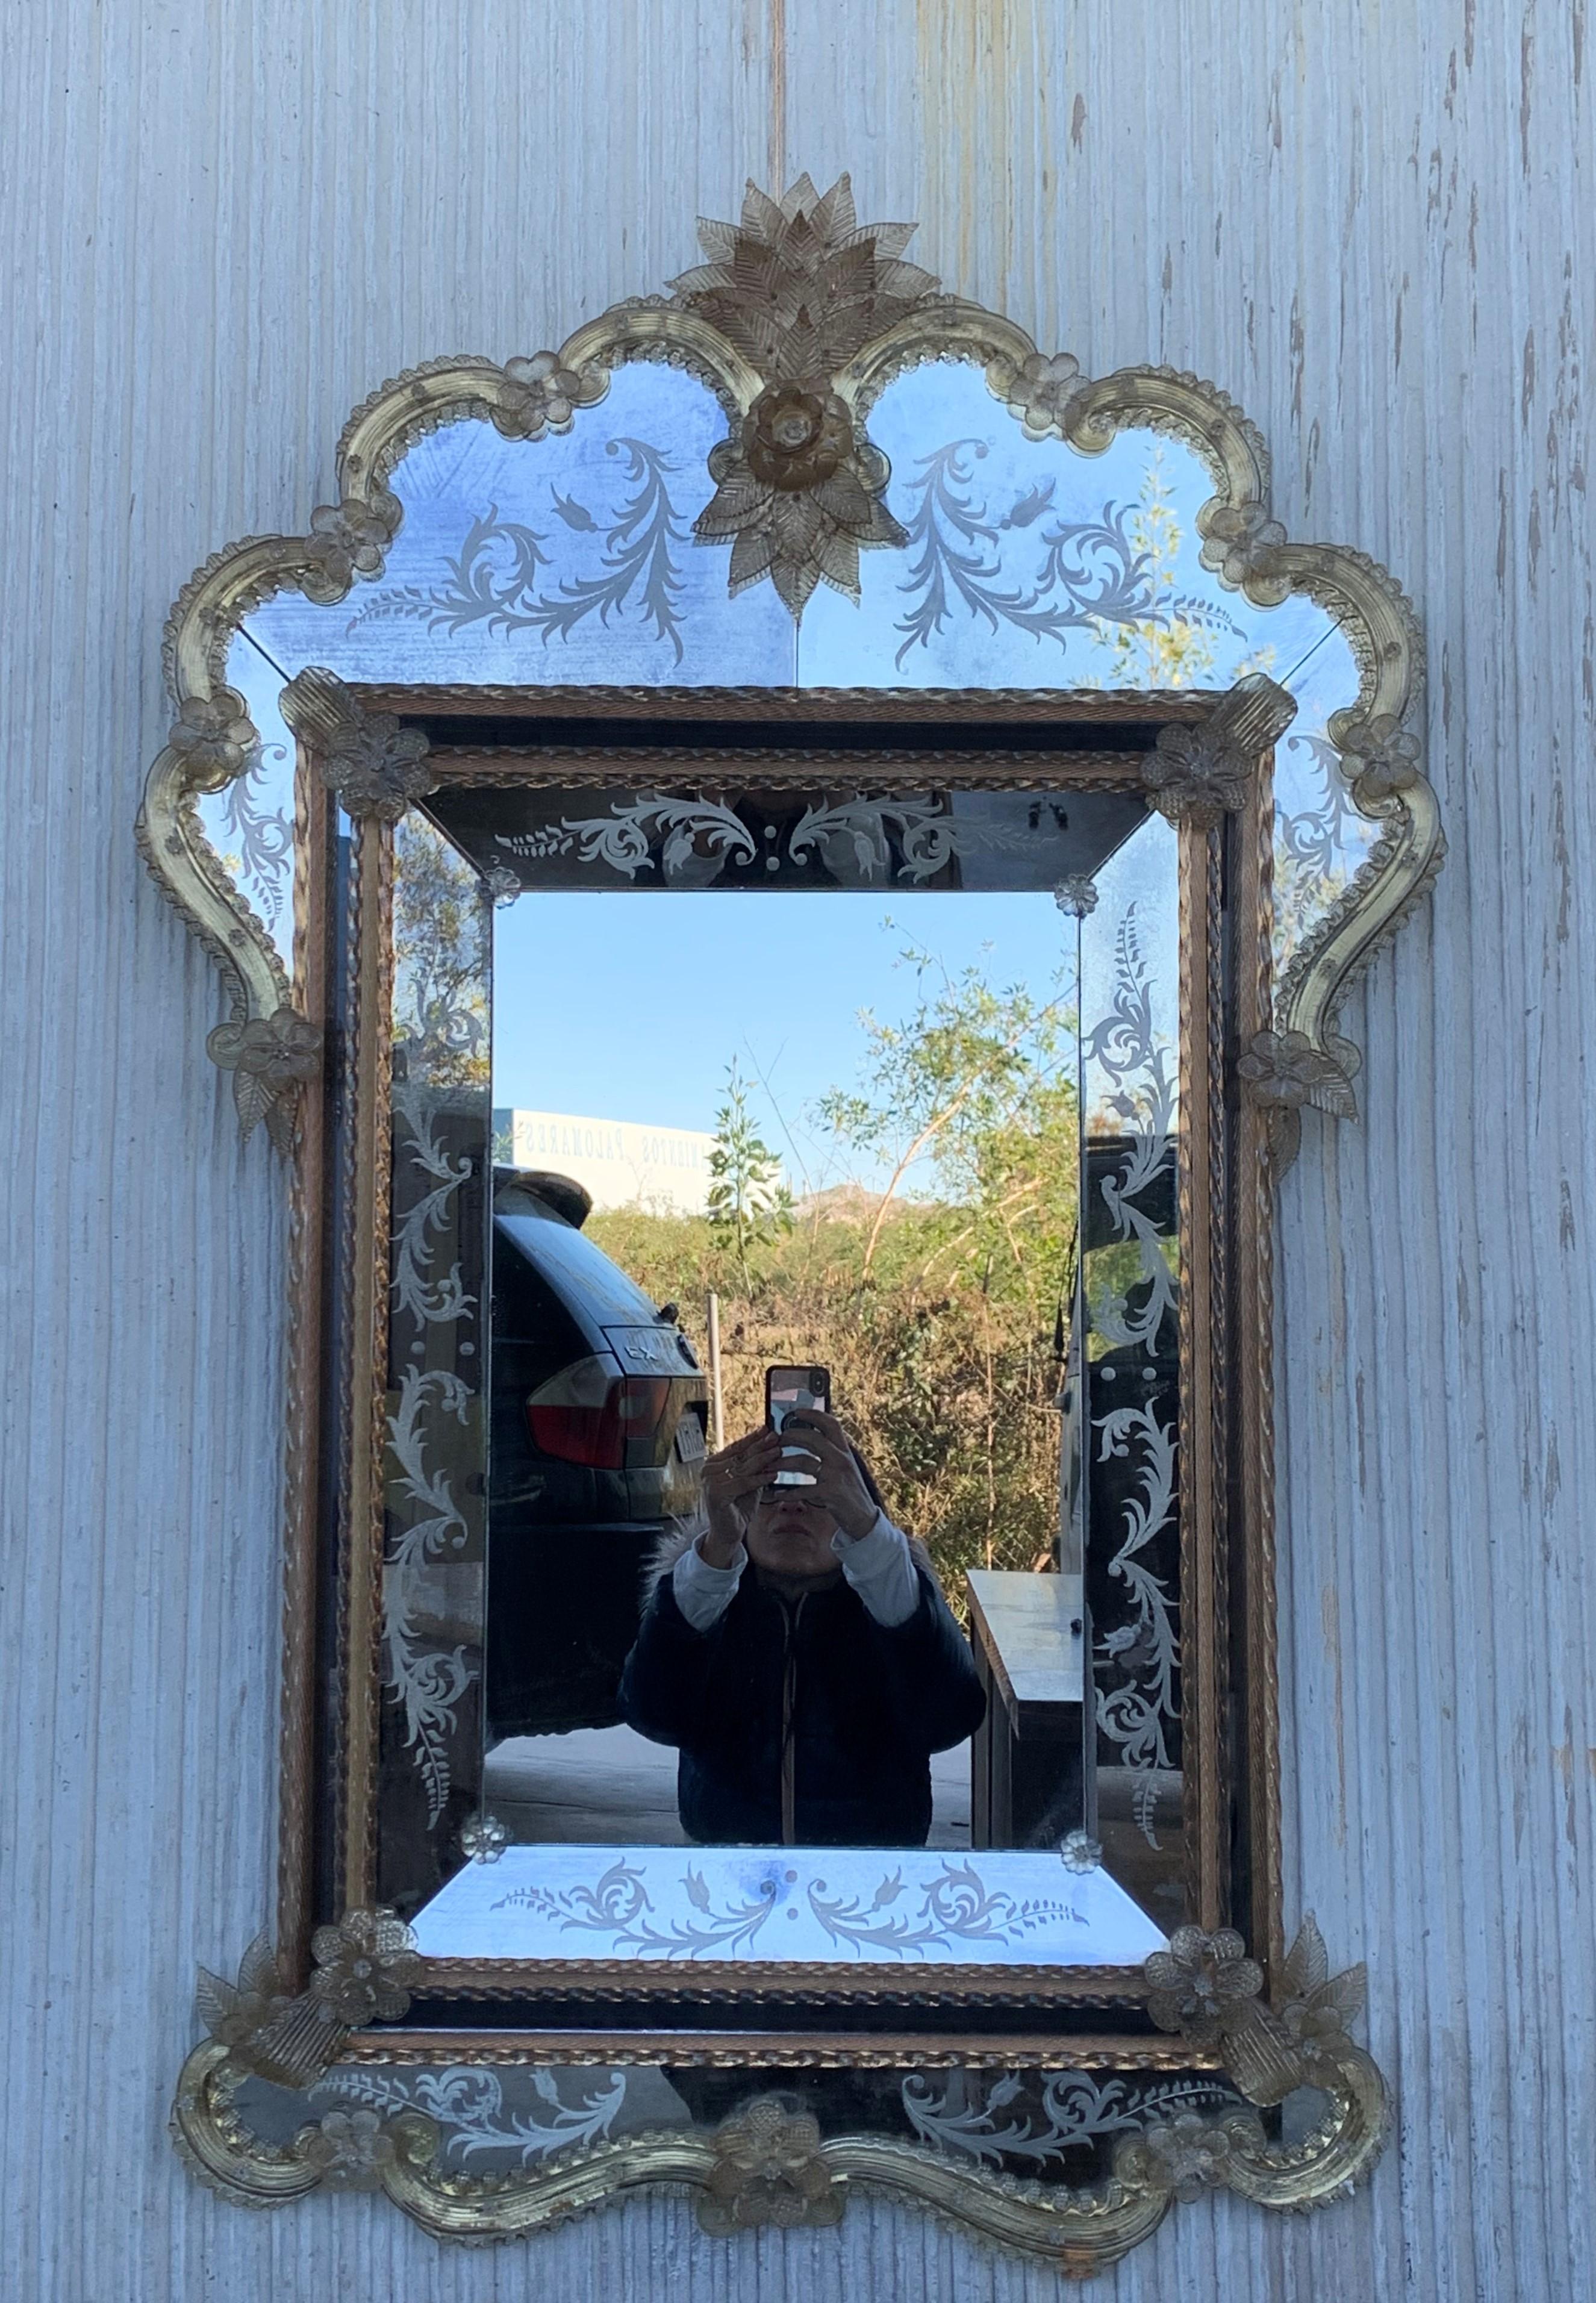 Der venezianische Spiegel mit Kammaufsatz. Der Spiegel mit abgeschrägten Paneelen und geschnitztem Wappen mit einem hübschen lotusblütenähnlichen Motiv ist handgefertigt und von Hand versilbert. Die mittlere Platte weist eine leichte Antikisierung